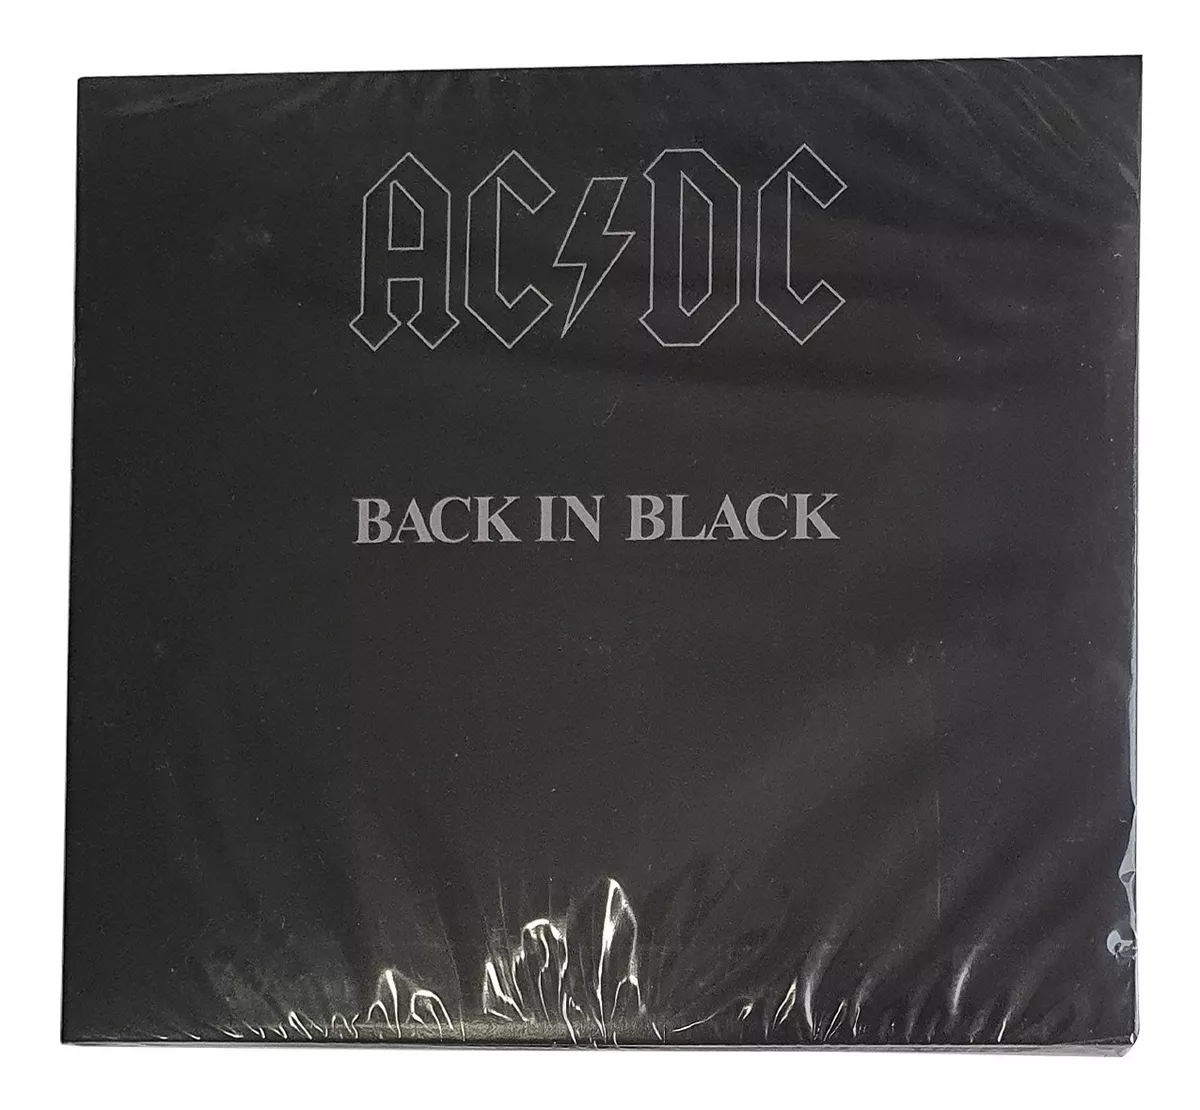 Cd Ac/dc Back In Black Original Novo Lacrado Rock 1980